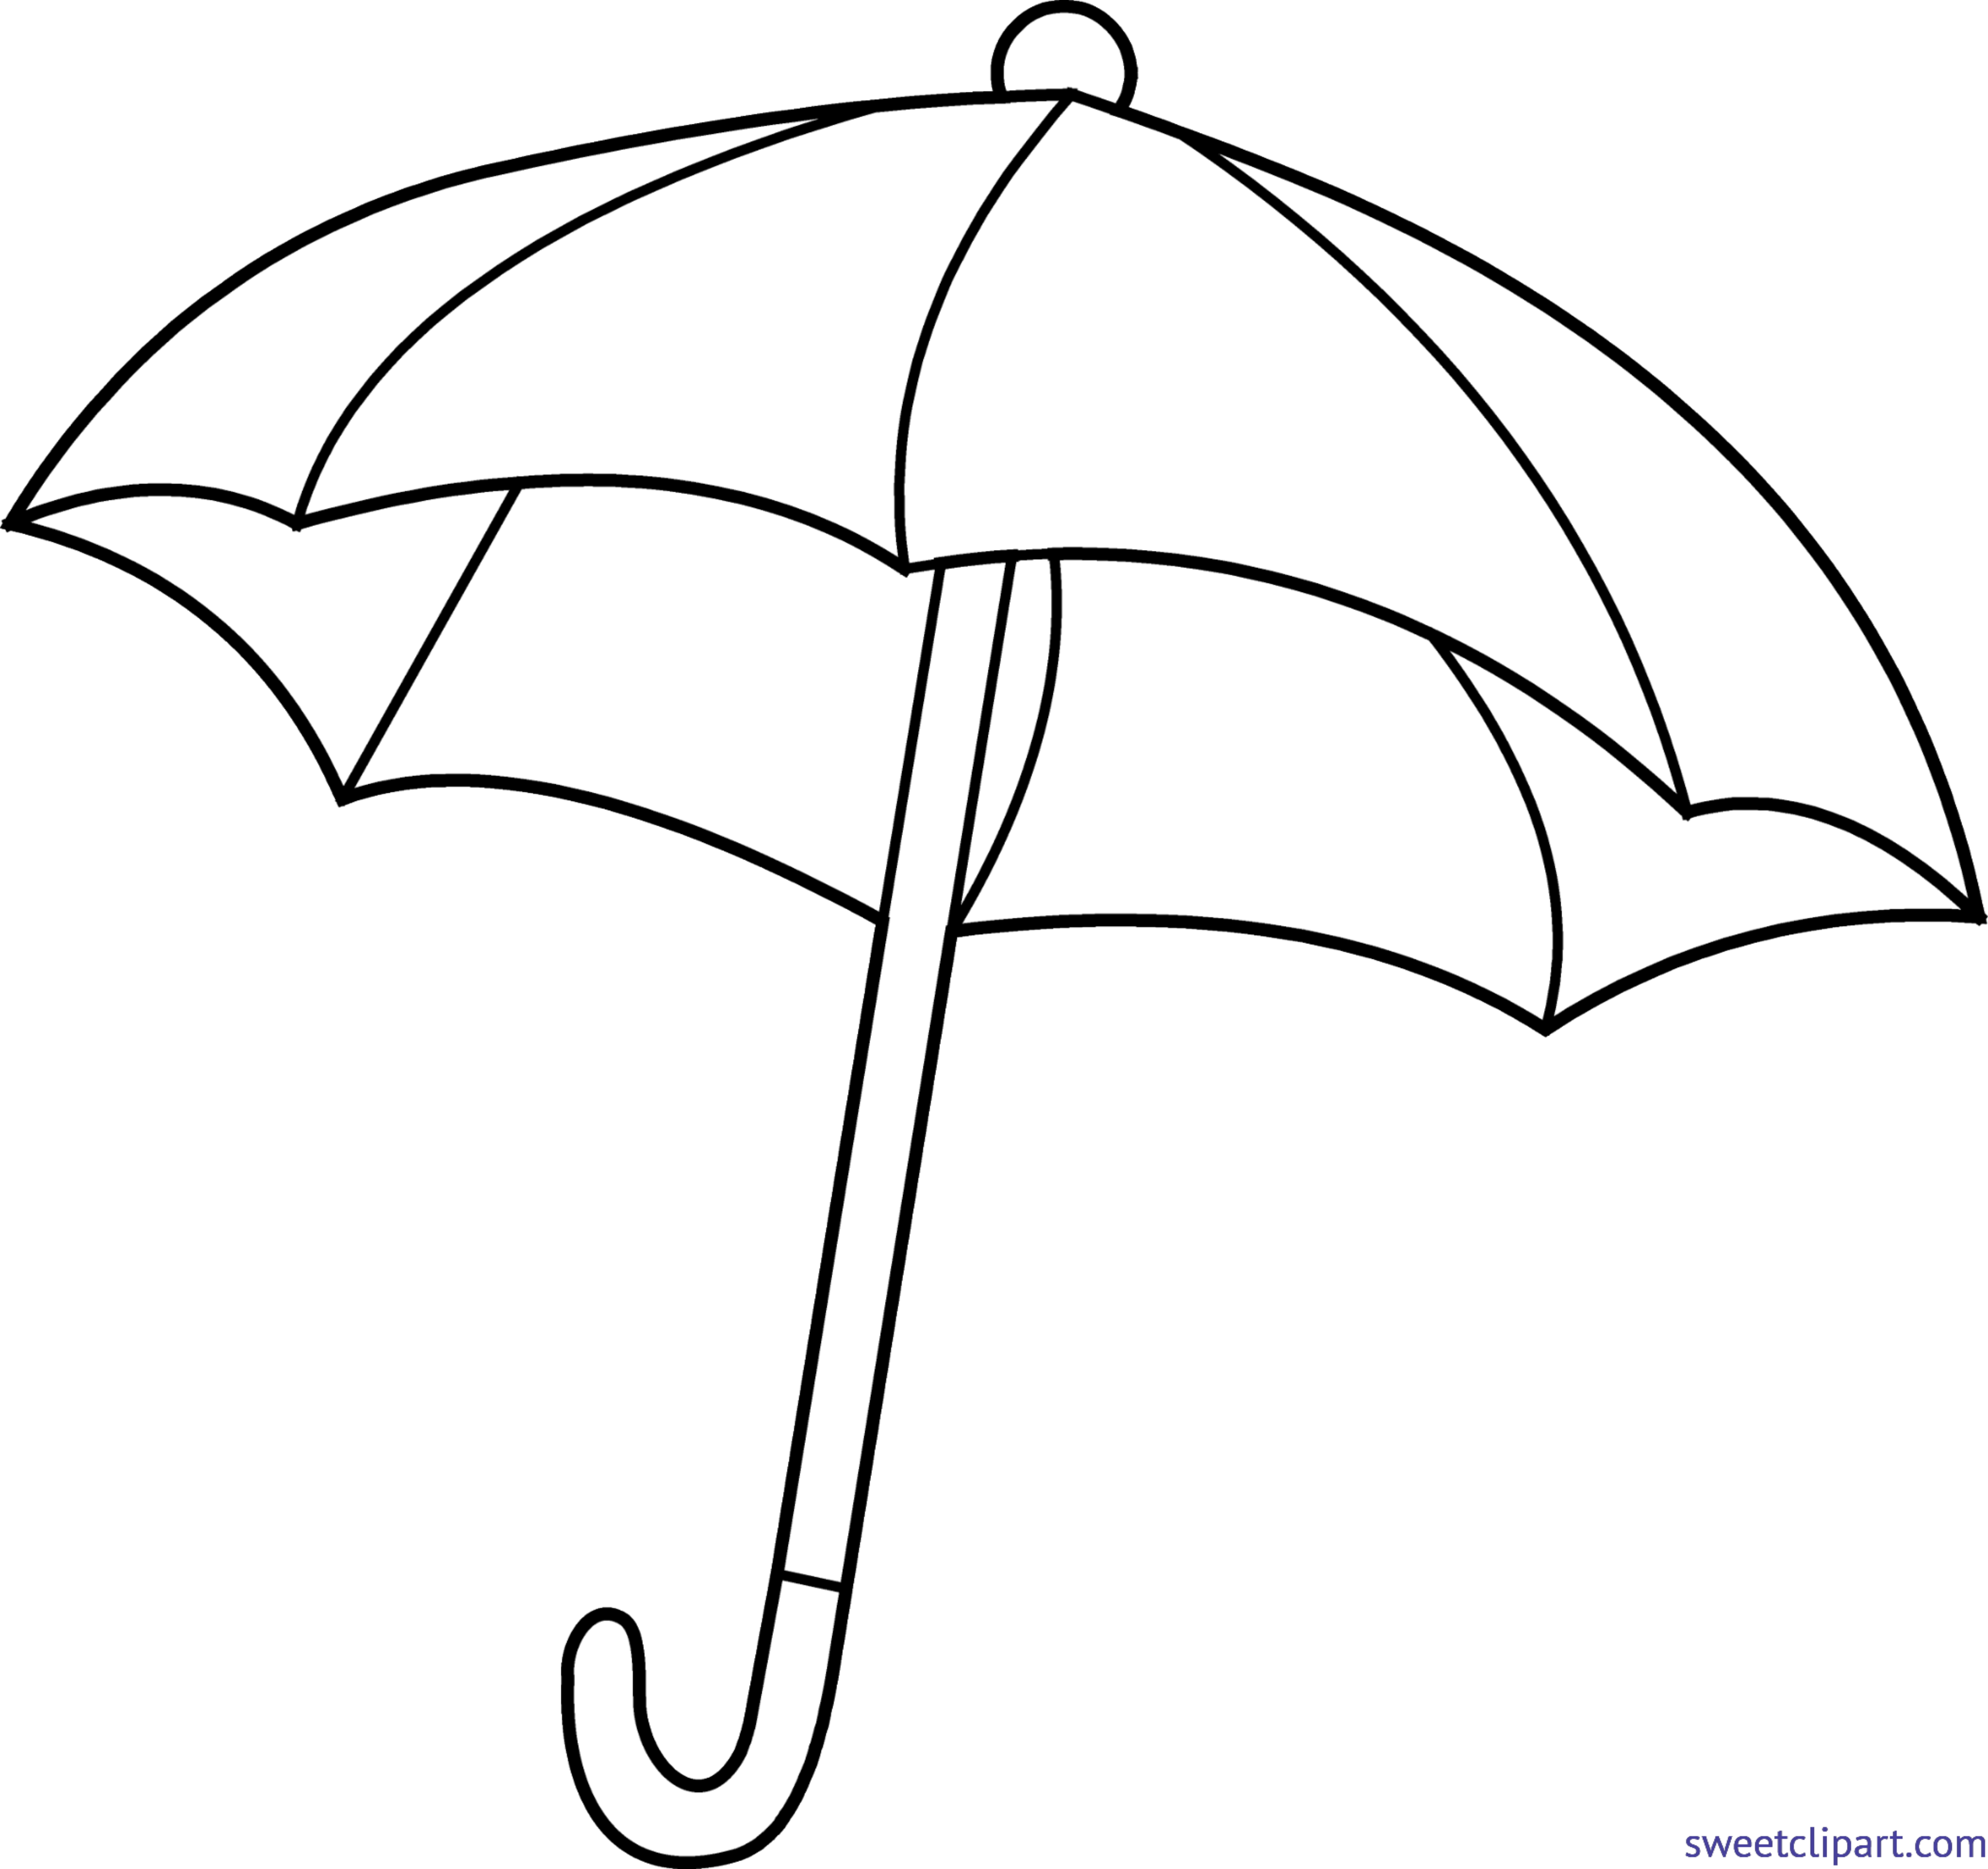 Распечатать зонтик. Зонт раскраска. Зонт для раскрашивания детям. Раскраска зонтик. Зонтик раскраска для детей.